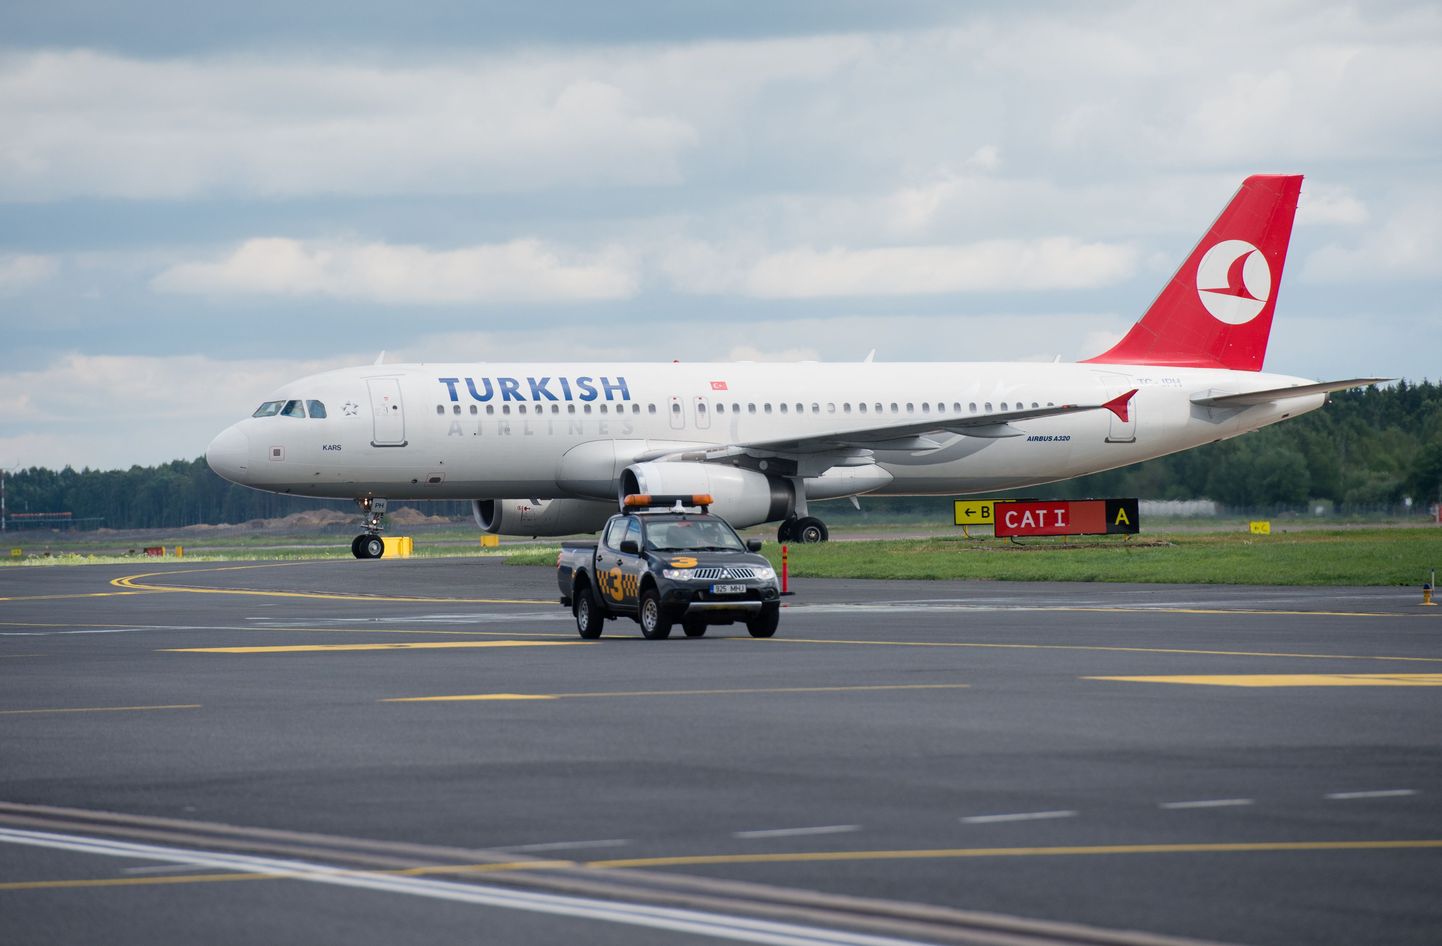 Koostöö laiendab Nordica klientidele Turkish Airlines’i poolt pakutavat sihtkohtade valikut.